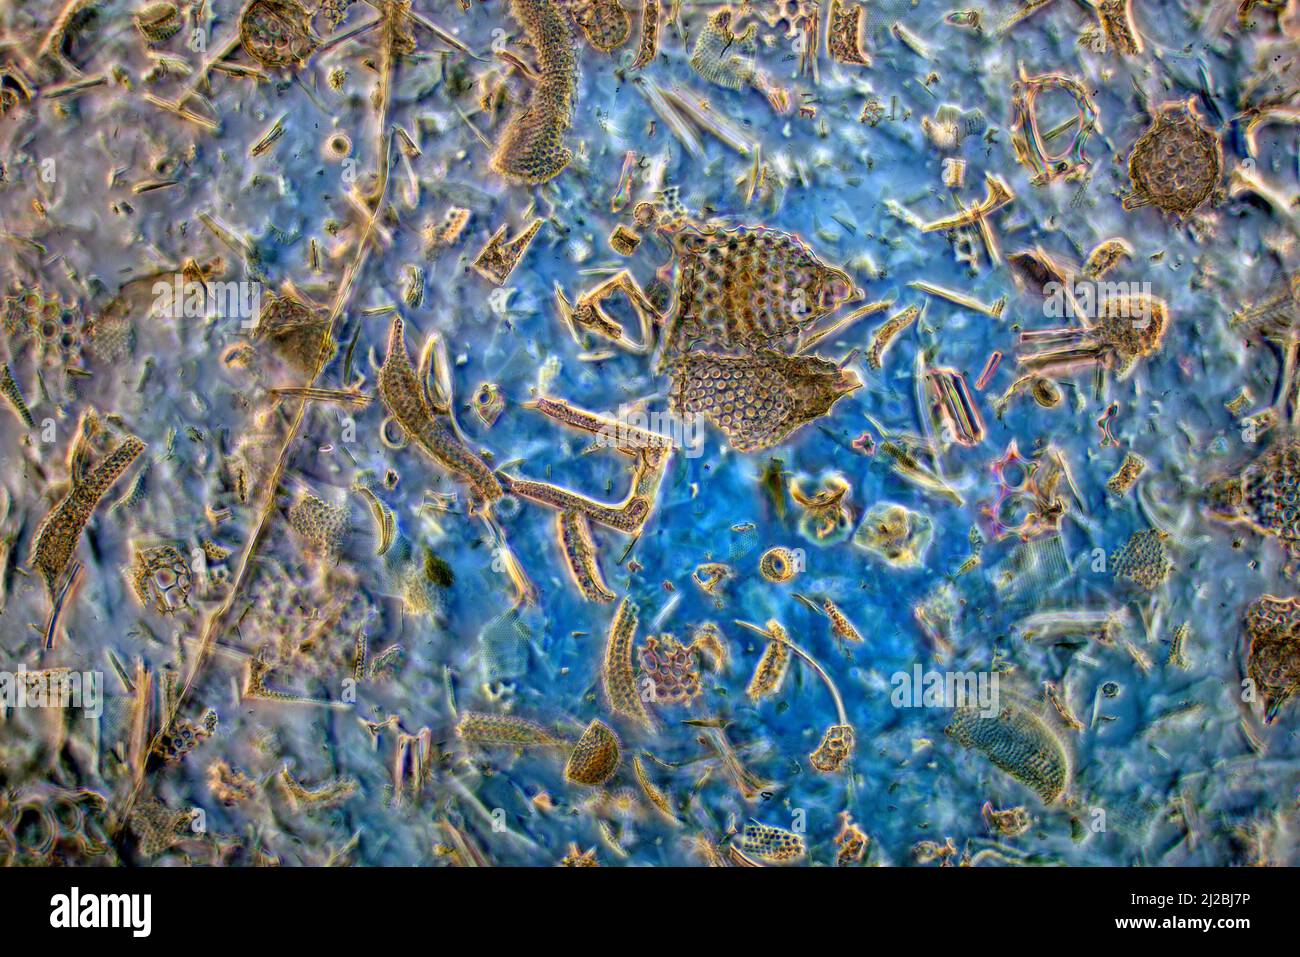 Diatomi fossili, radiolaria, spugne di spugna, ricca biodiversità delle Barbados del 1800 Foto Stock